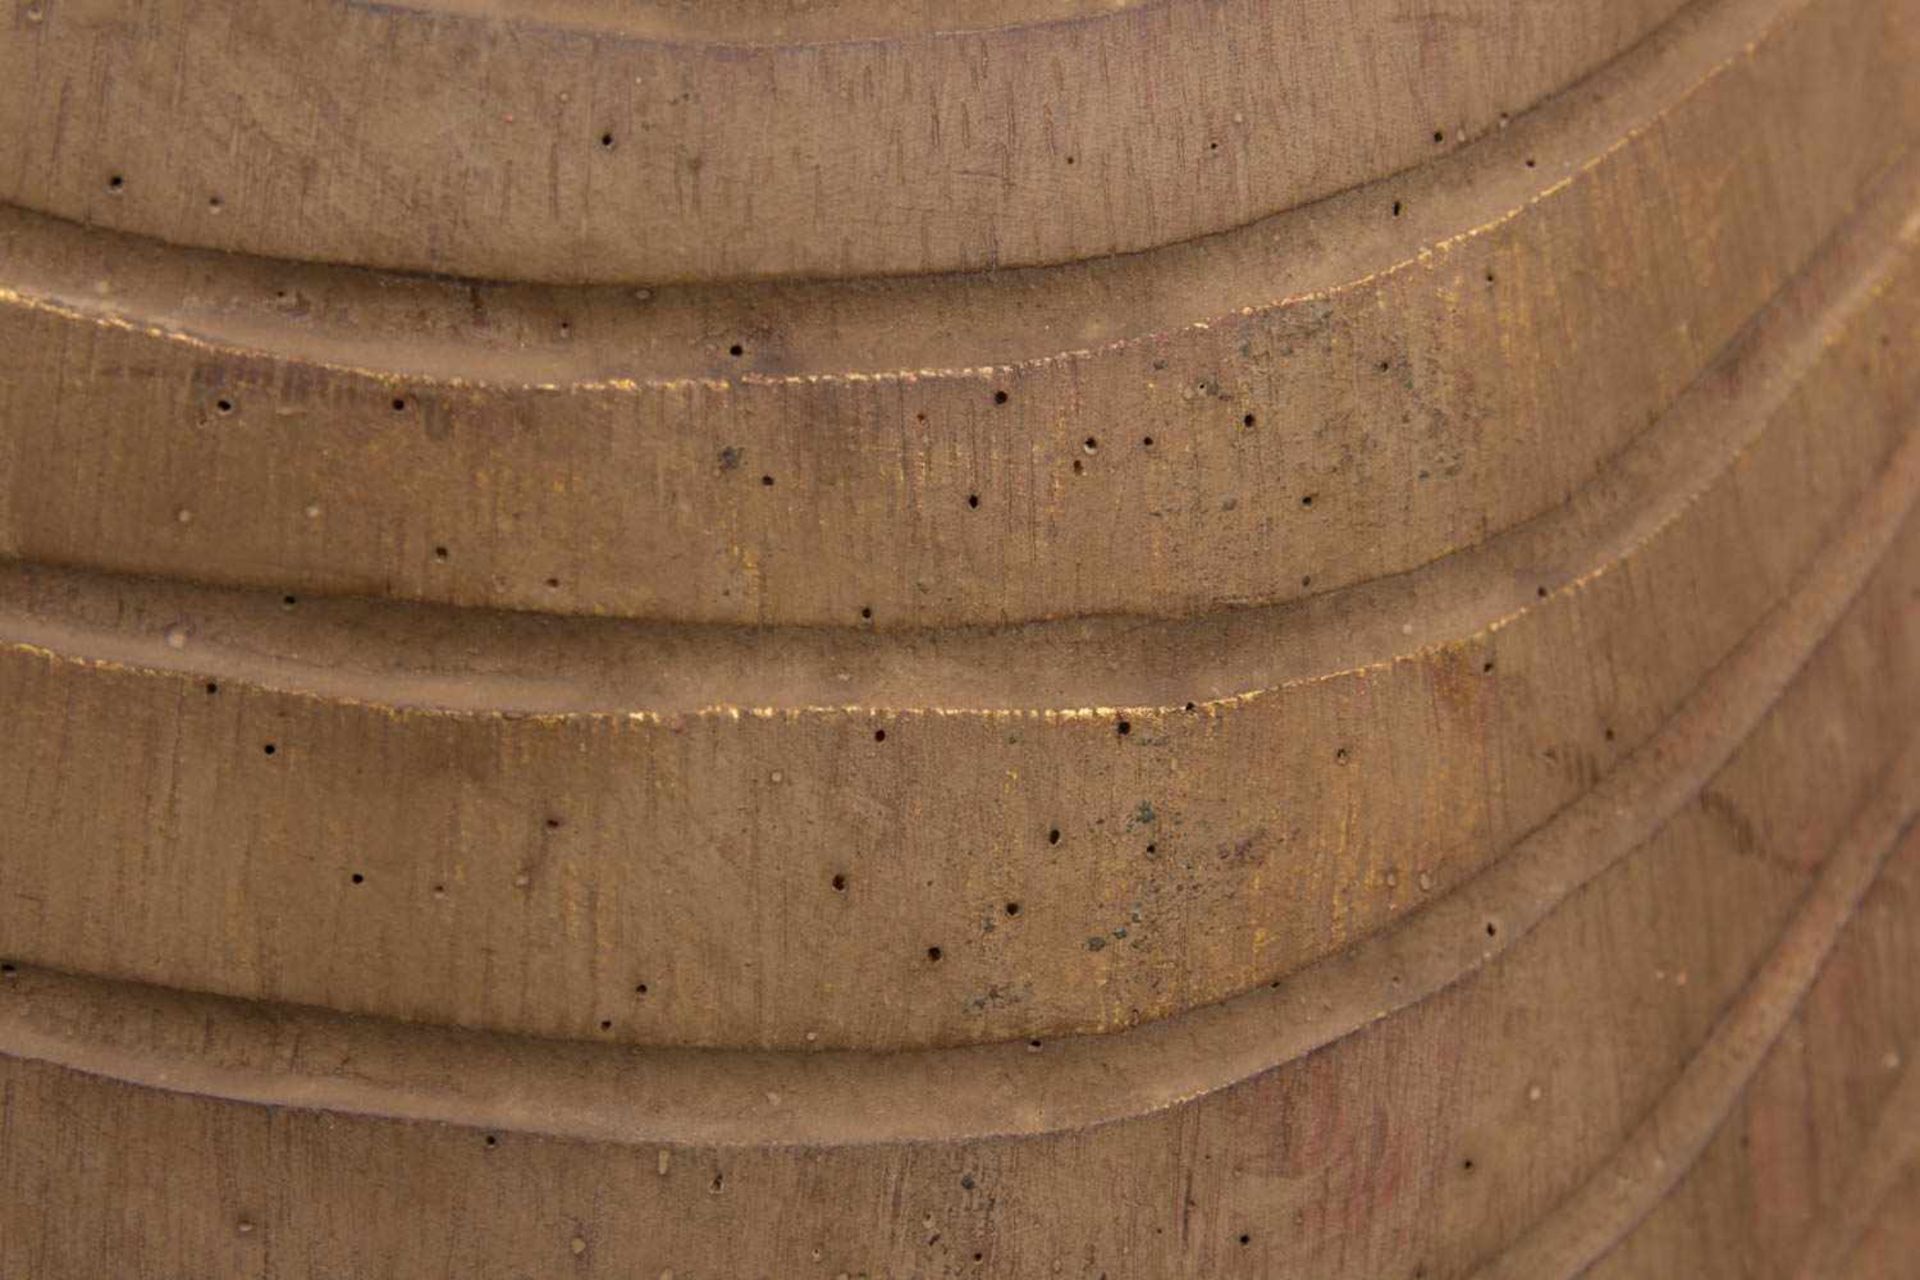 THAILÄNDISCHE BUDDHA STATUE, Holz, 20. Jh.Betende Skulptur in sehr gutem Zustand auf Sockel stehend. - Bild 5 aus 6